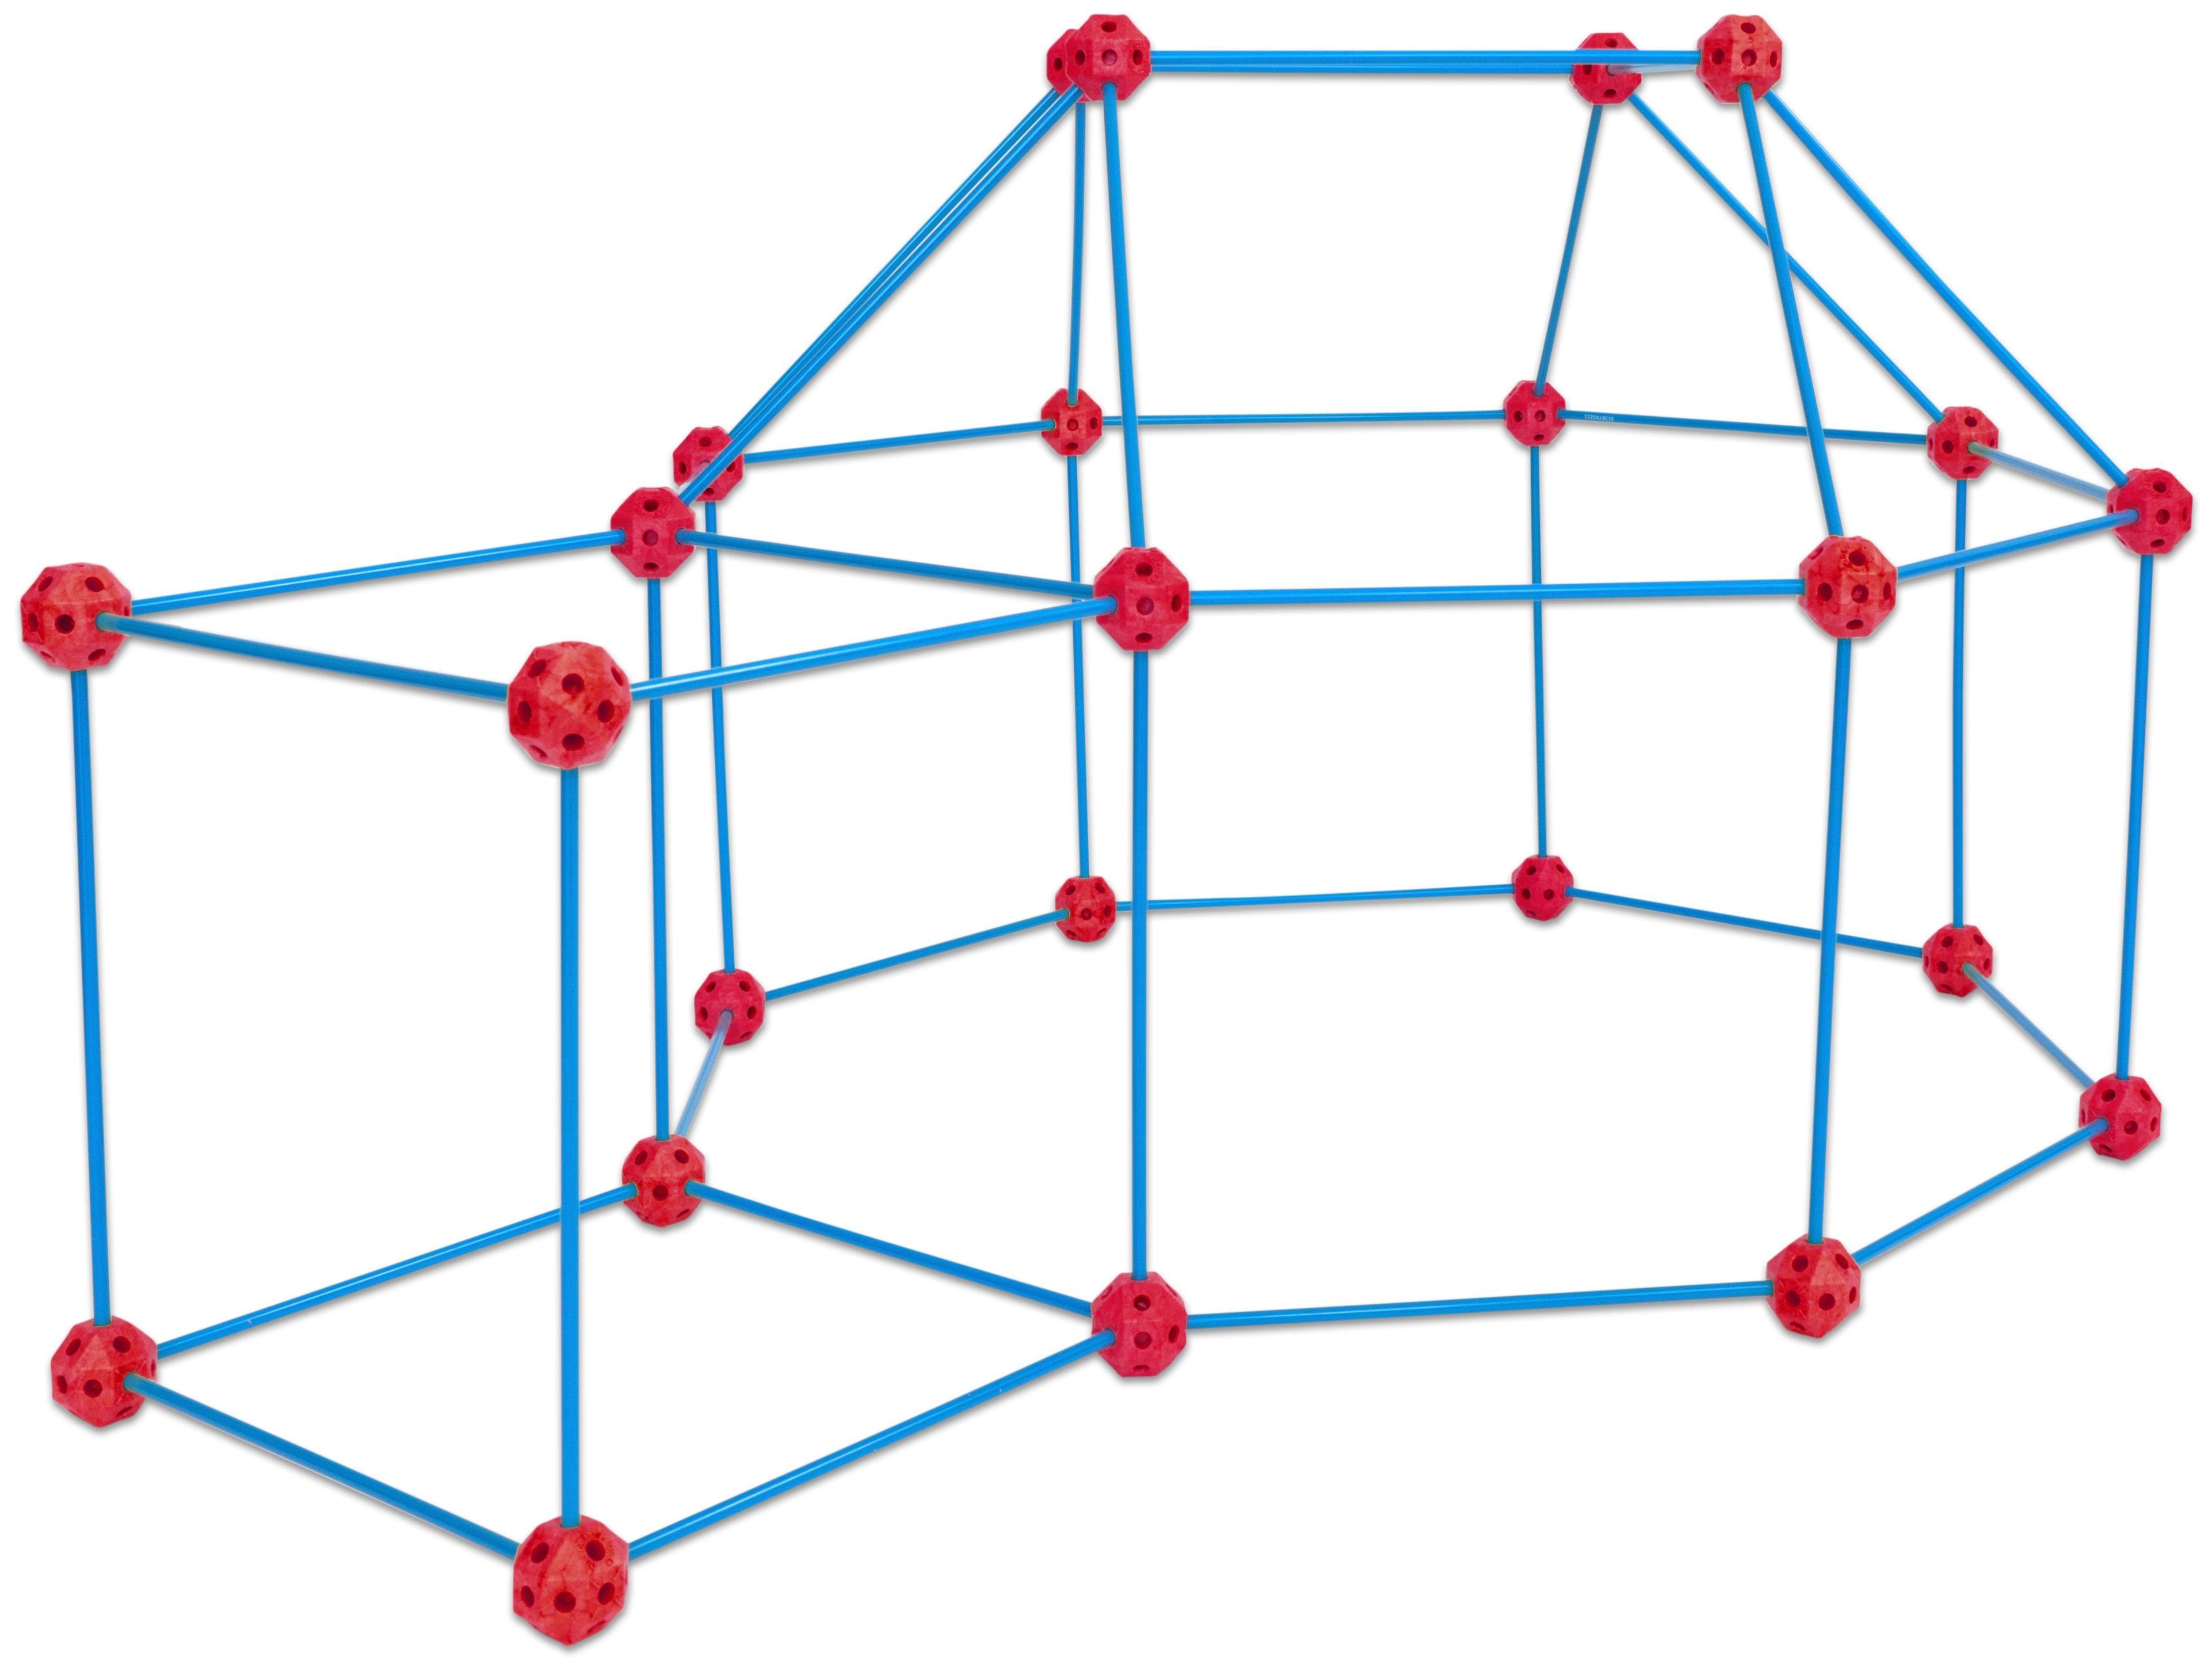 Betzold Lernspielzeug Steckbaukasten groß – XXL – Geometrische Formen bauen, Mathe